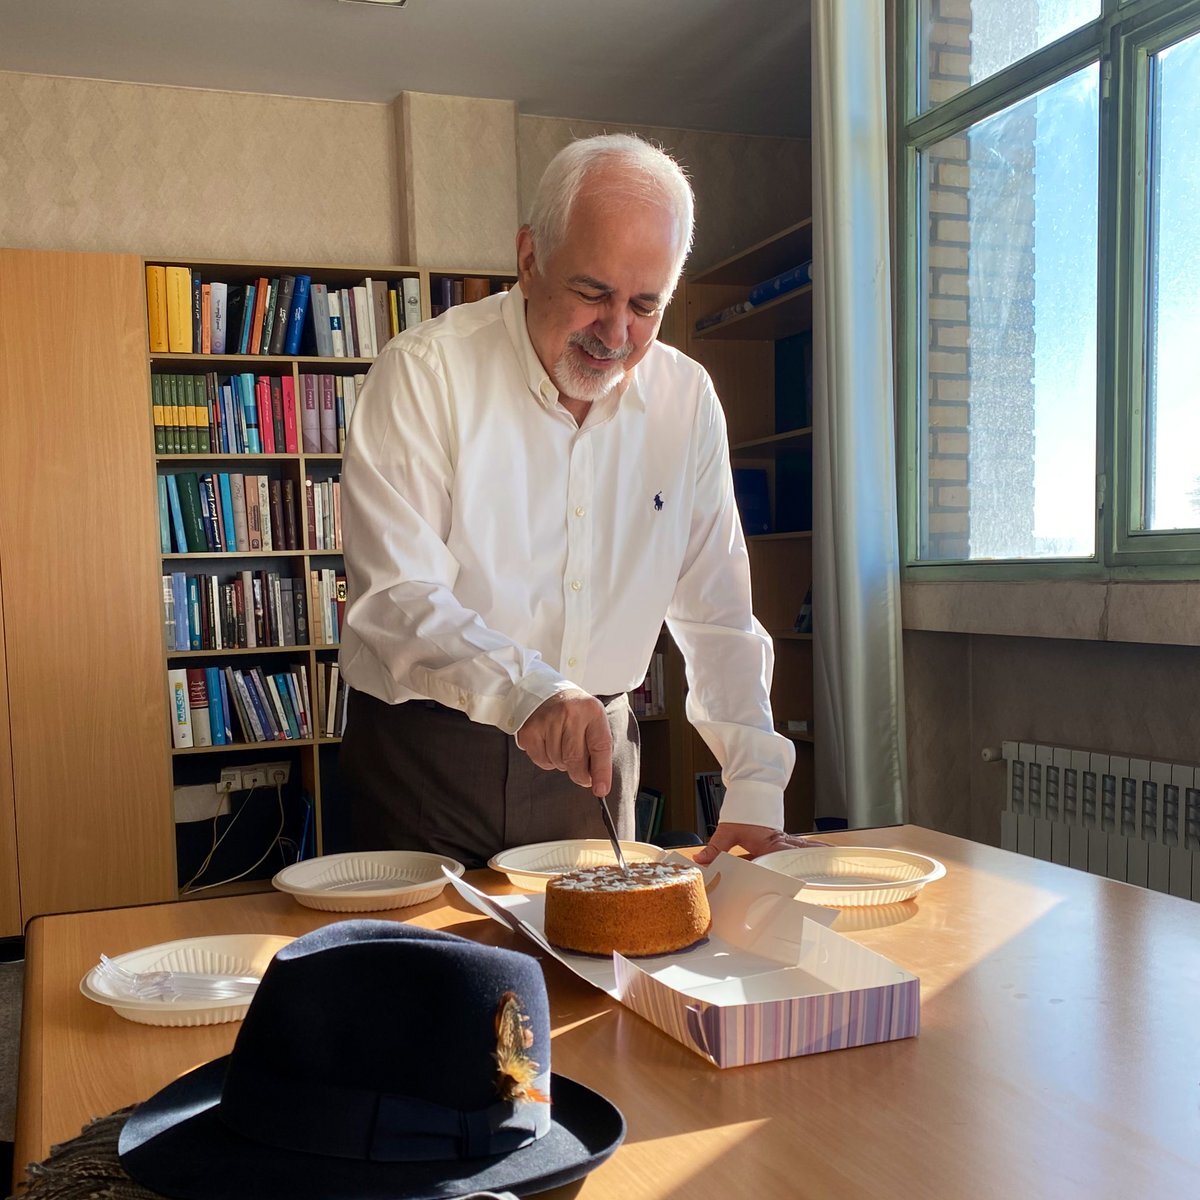 محمدجواد ظریف در حین بریدن کیک تولدش در دفتر کارش + عکس